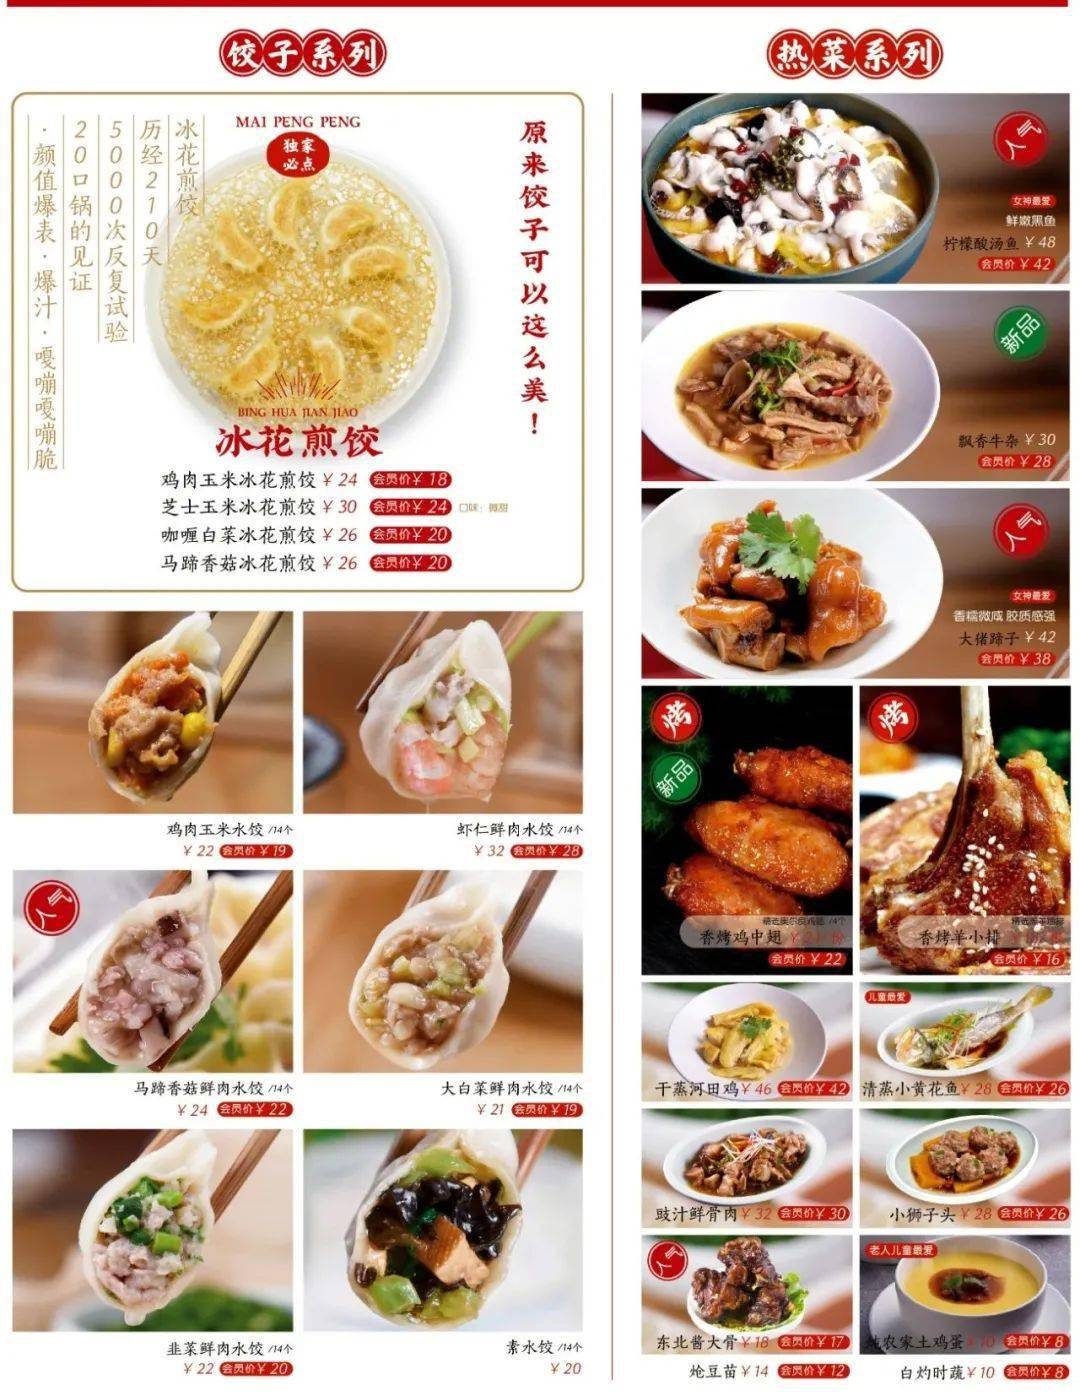 厦门饺子排行榜第1名,敲碎才能吃!